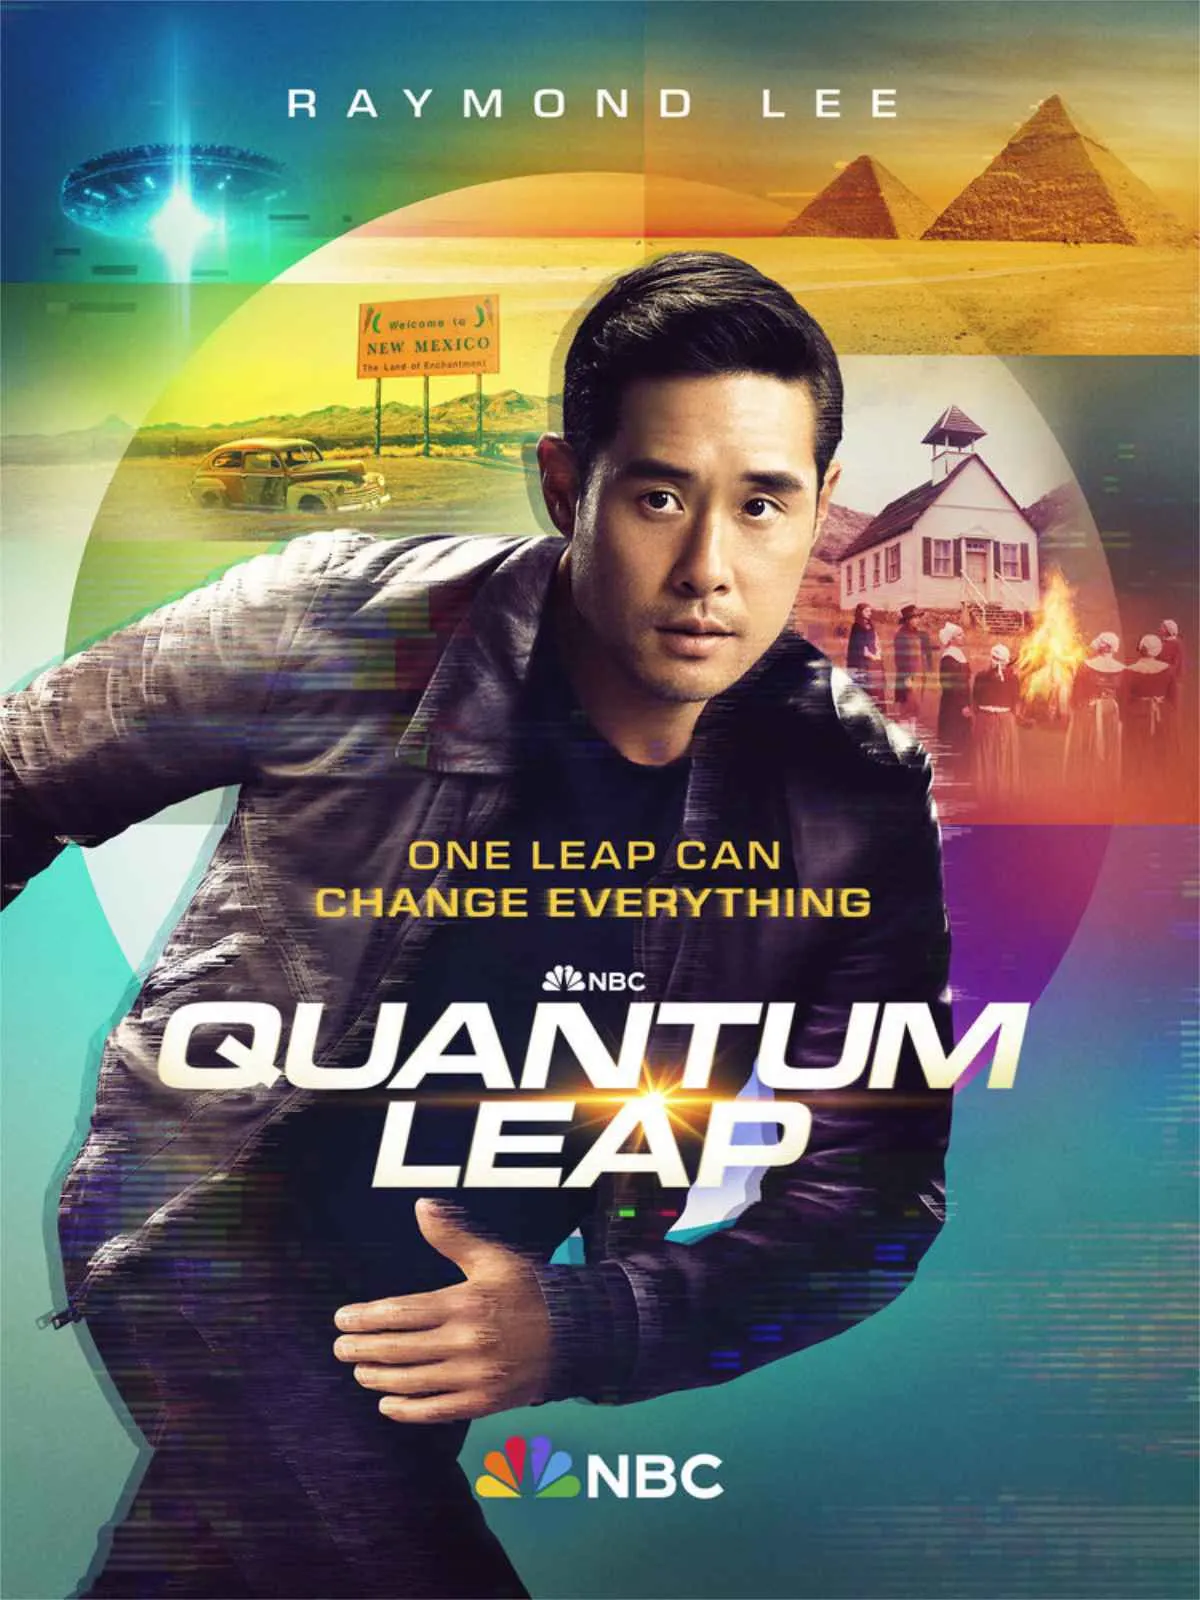 Quantum Leap Season 2 Trailer Revealed